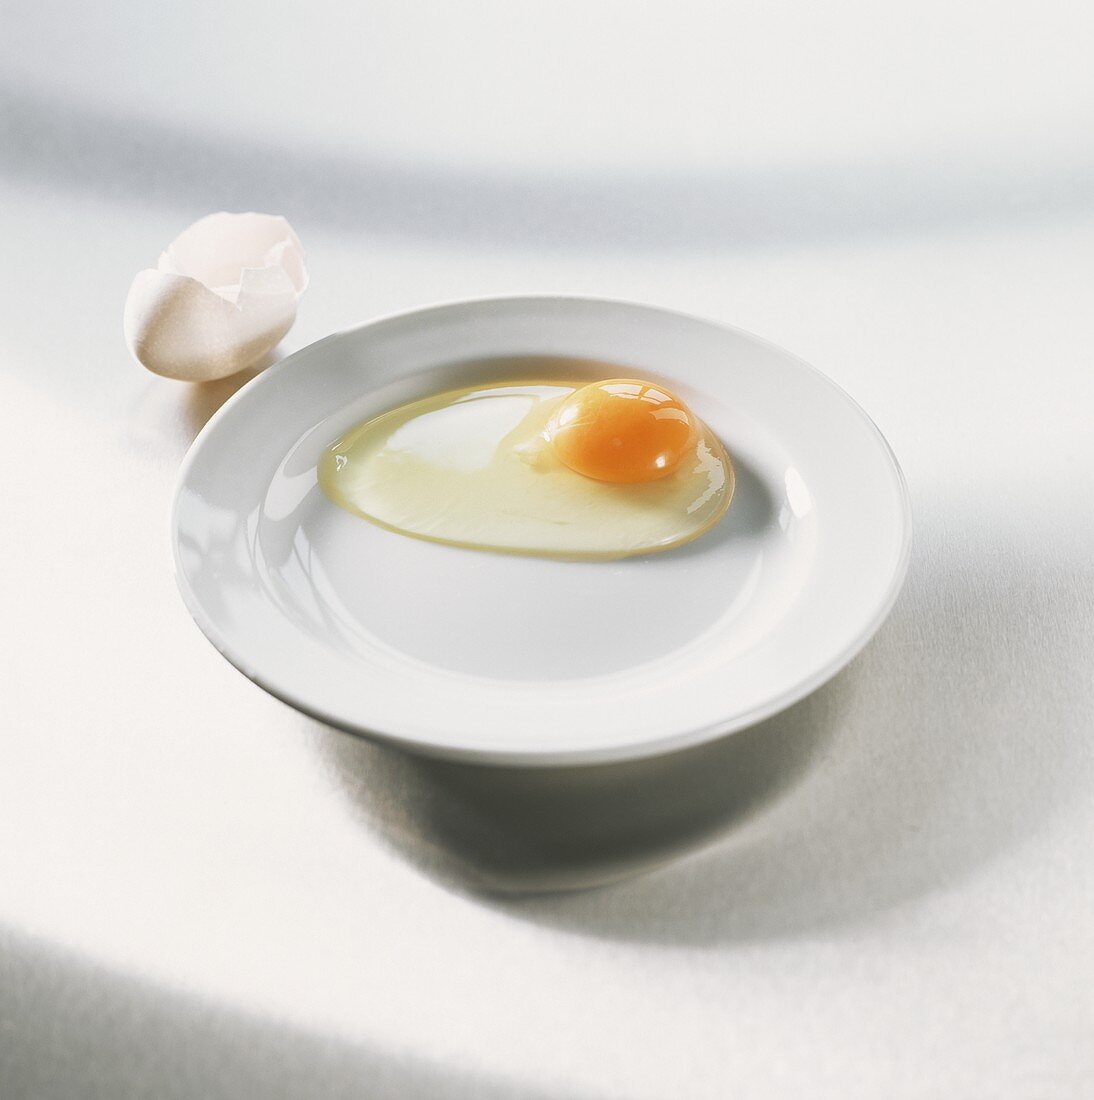 Sehr frisches aufgeschlagenes Ei auf weißem Teller